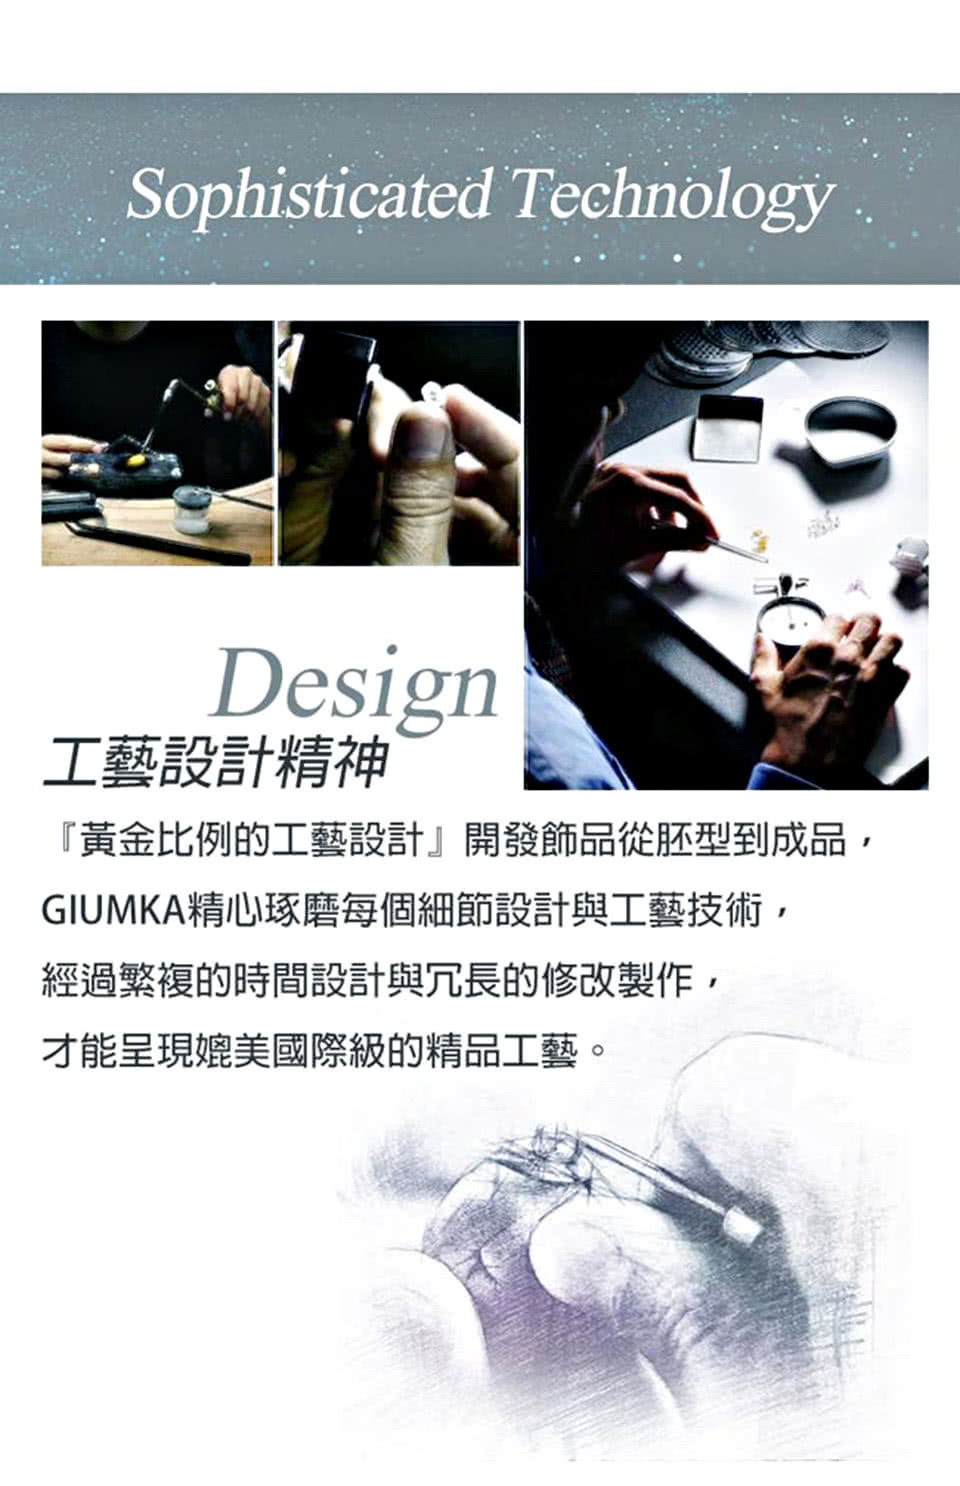 GIUMKAdesign.jpg?t=1530814321451